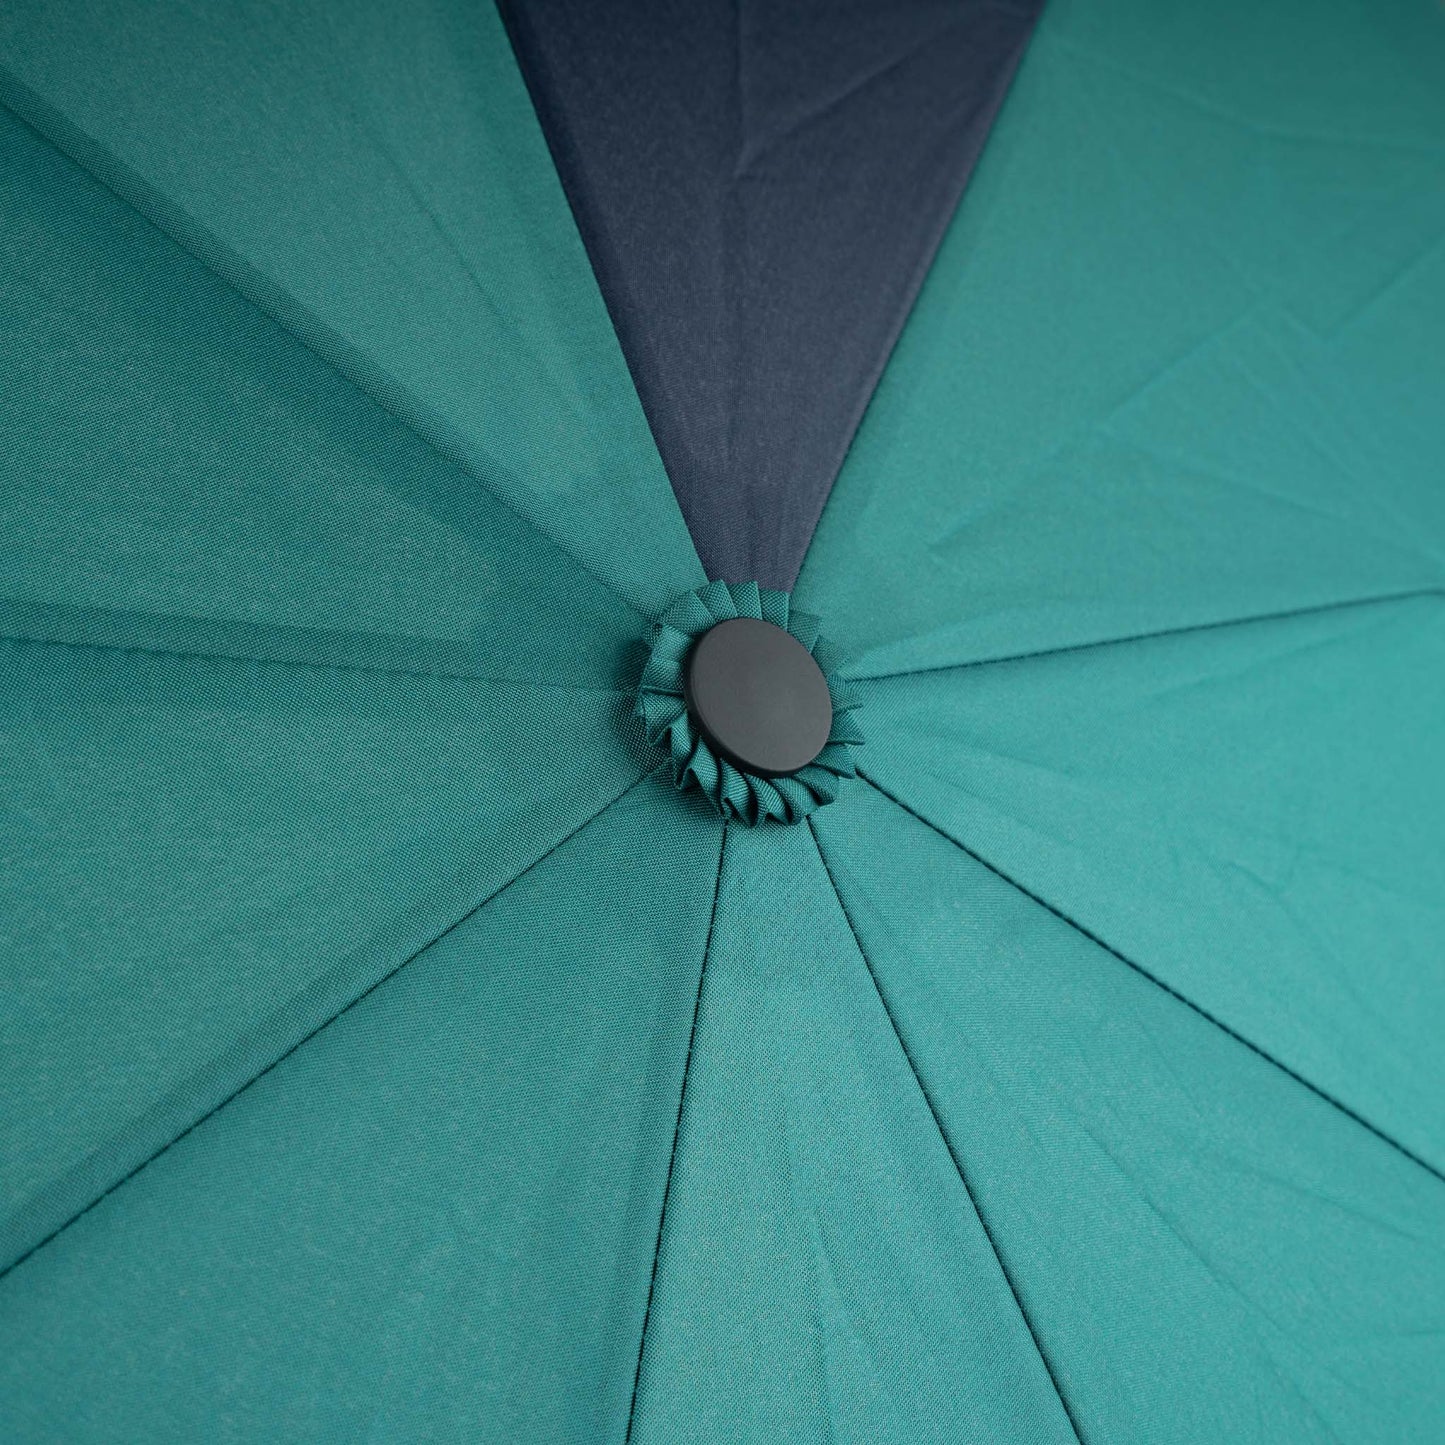 Roka London Waterloo Sustainable Umbrella,Teal & Midnight